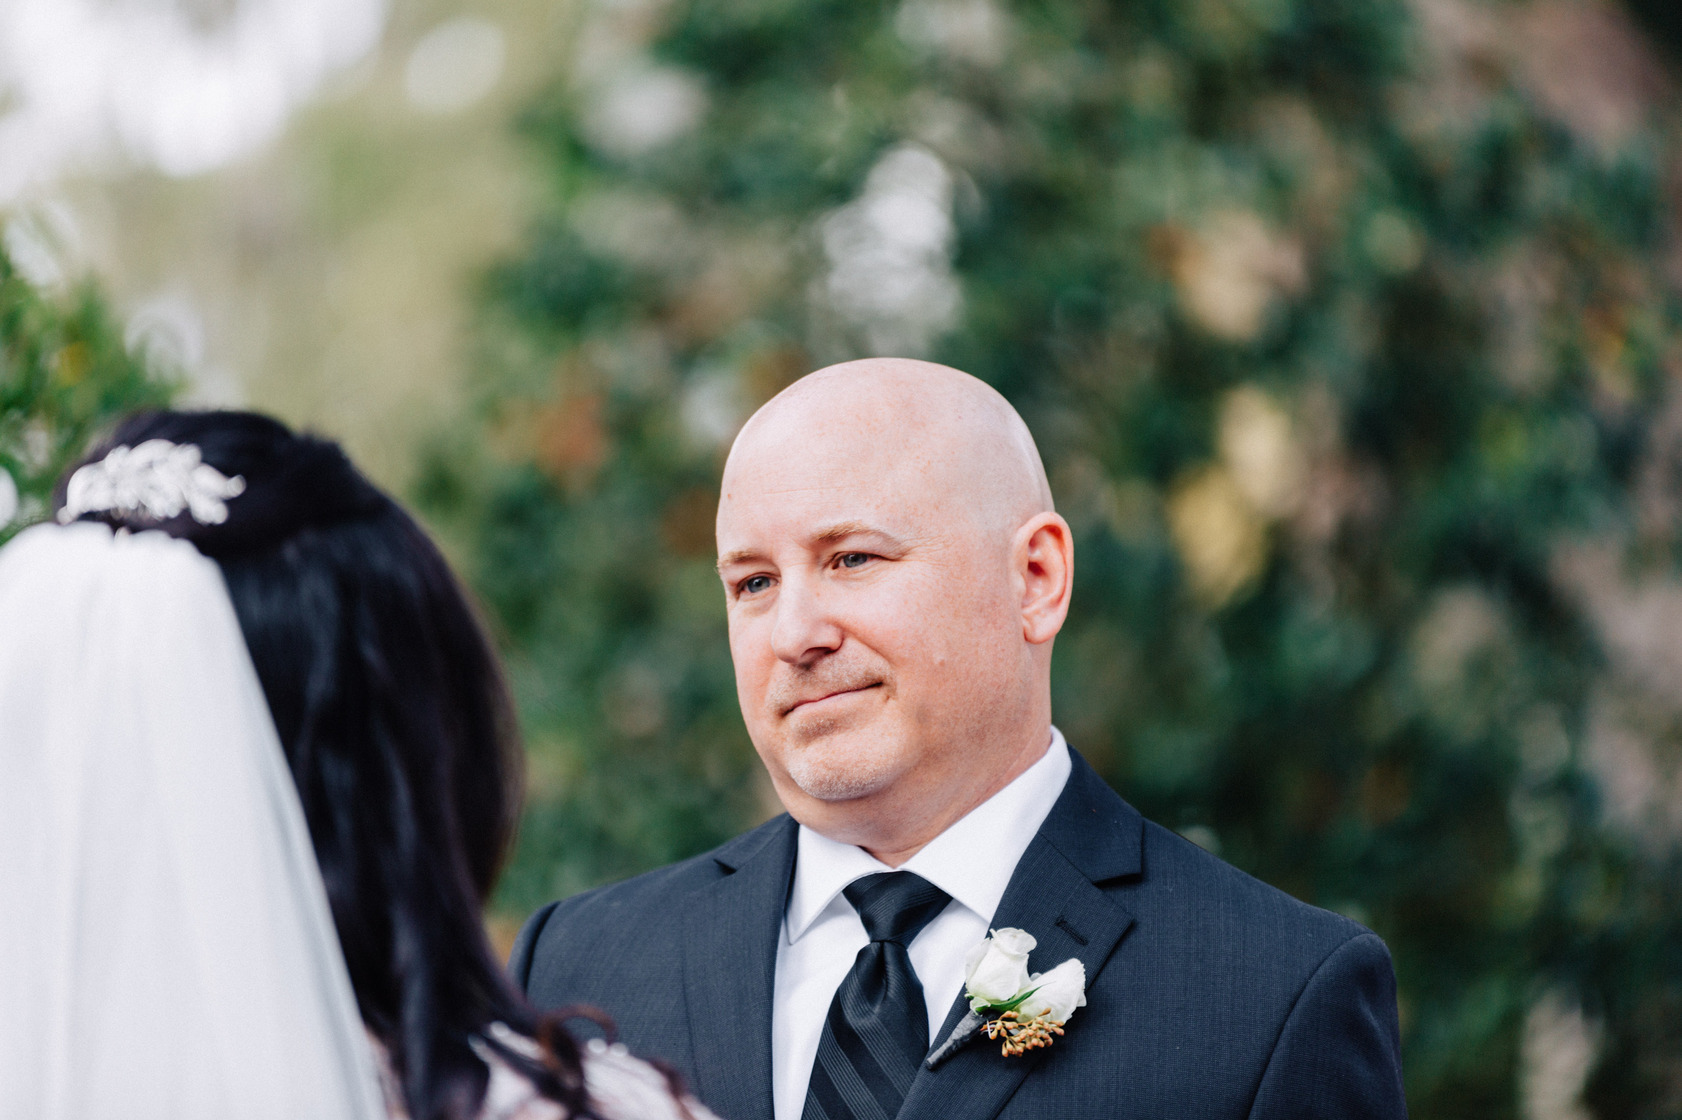 Florida Wedding Photography Blog Entries // Fun Bold Vibrant